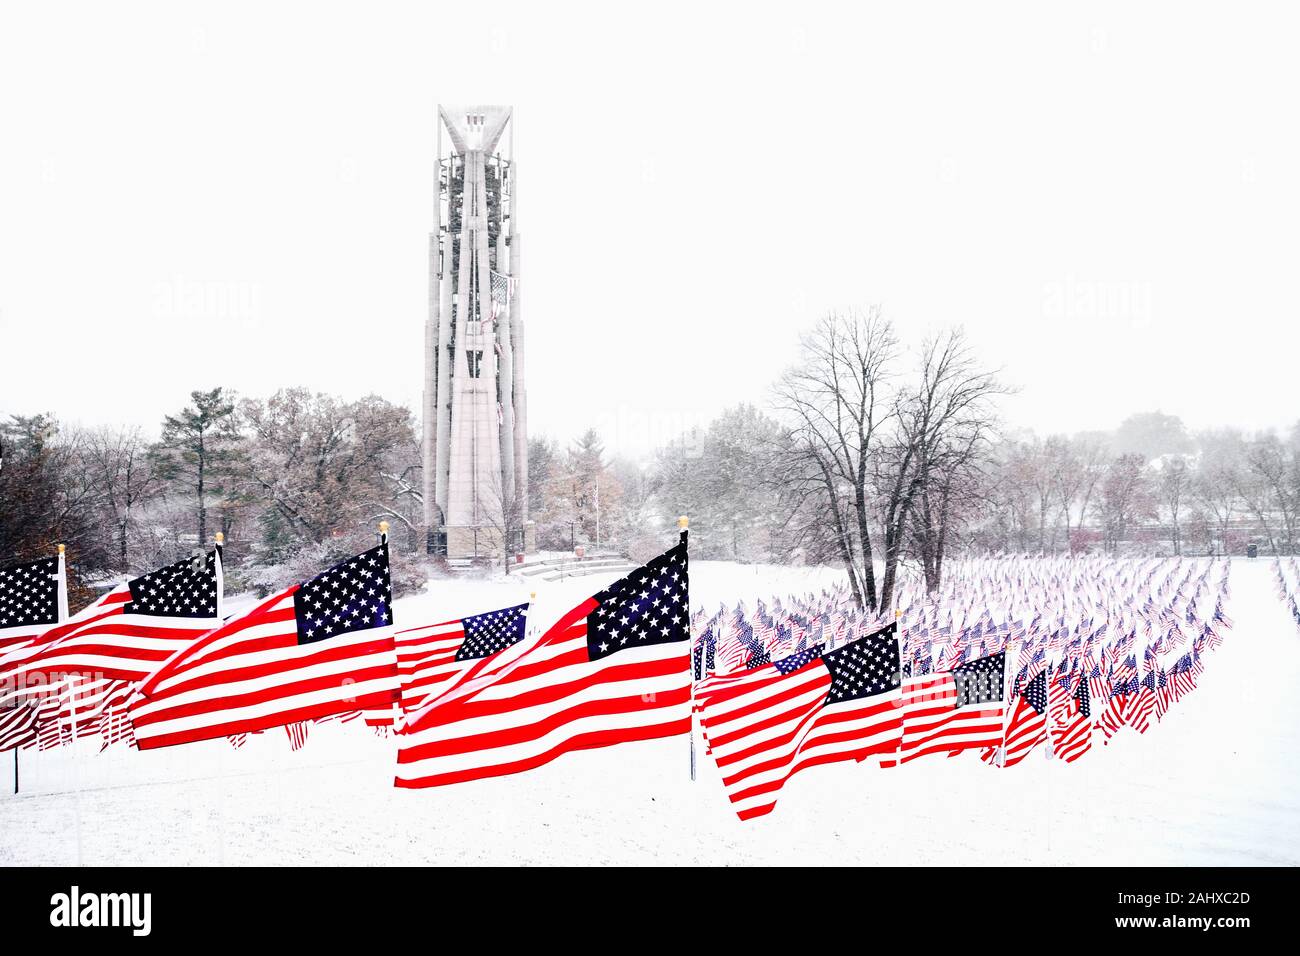 Amerikanische Flaggen in einer Winterszene Stockfoto